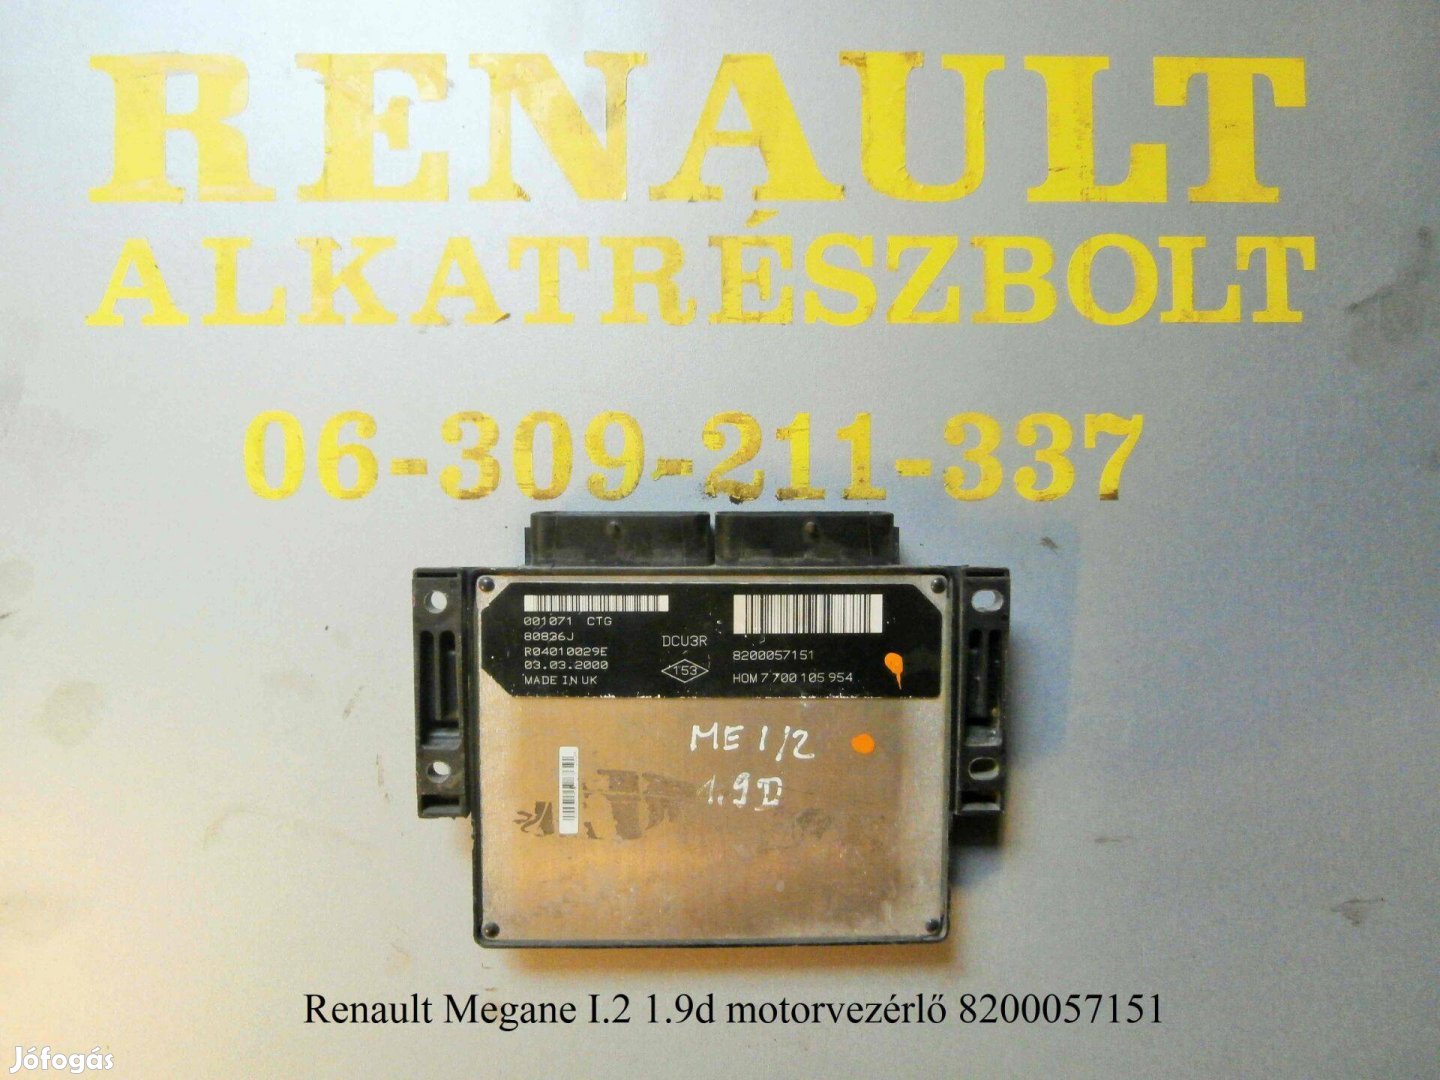 Renault Megane I/2 1.9d motorvezérlő 8200057151